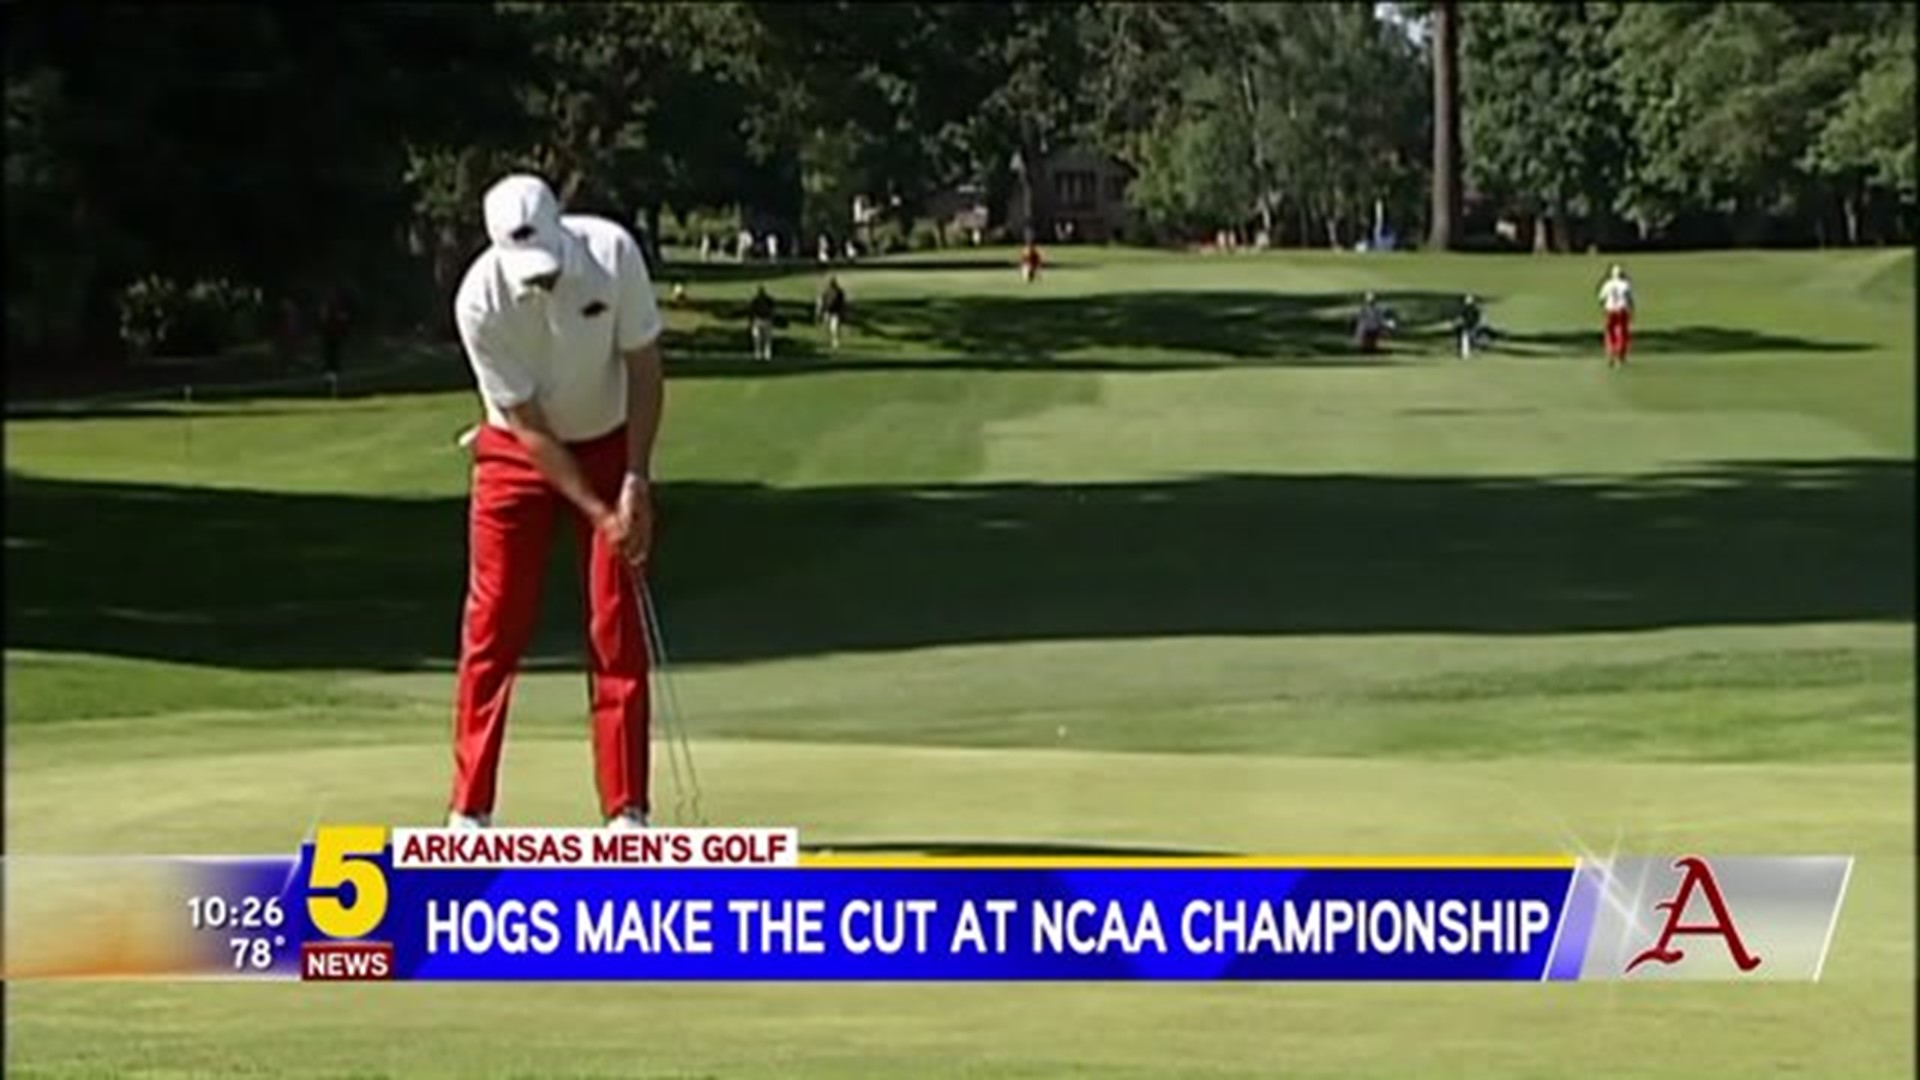 Hogs Make The Cut At NCAA Championship